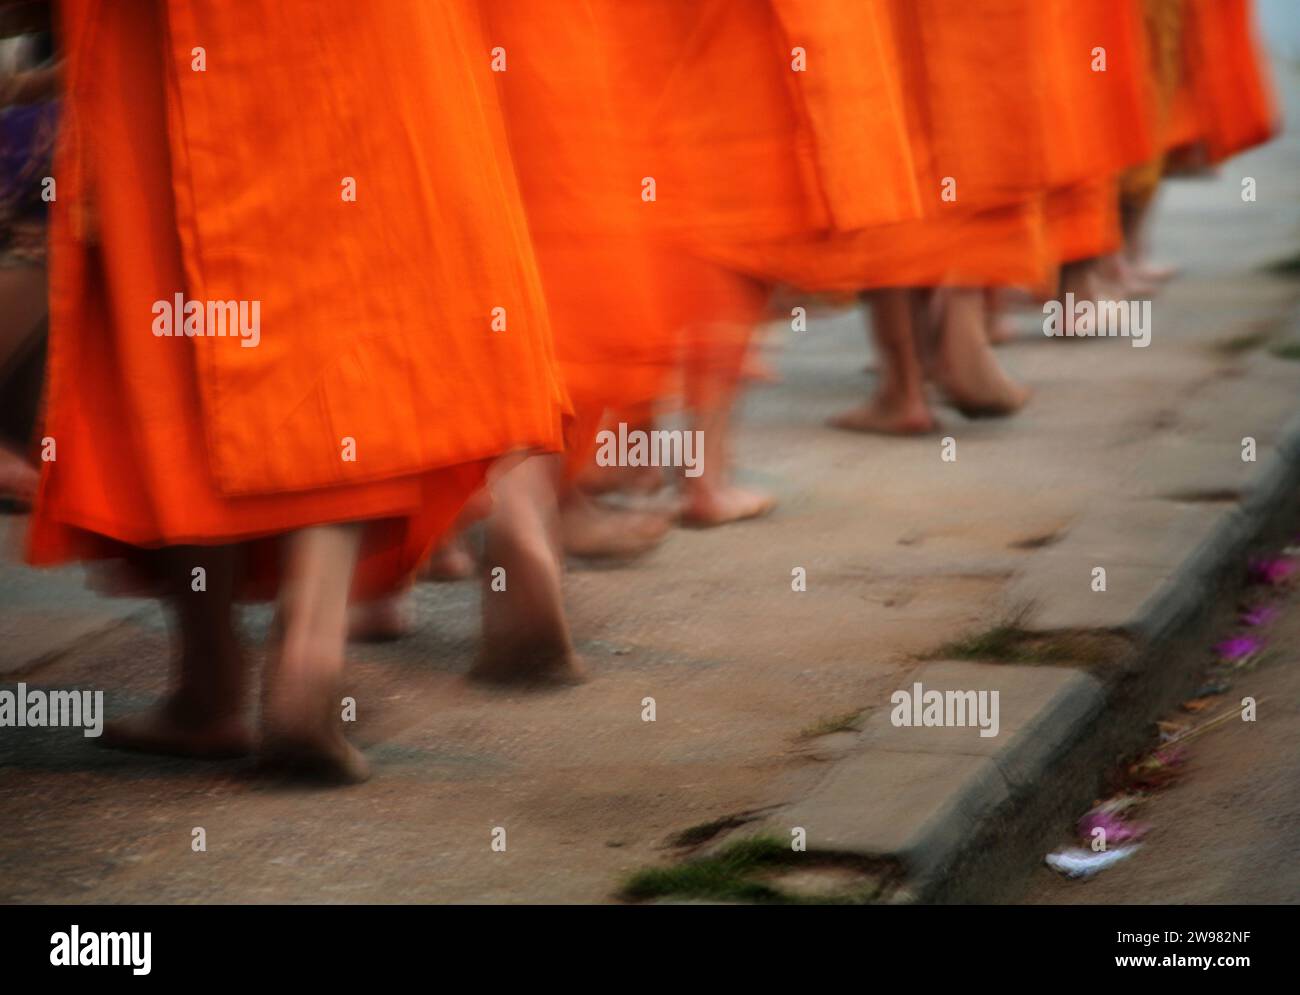 Buddhistische Mönchfüße gehen in einer Reihe auf einem Bürgersteig. Luong Probang, Laos. Stockfoto